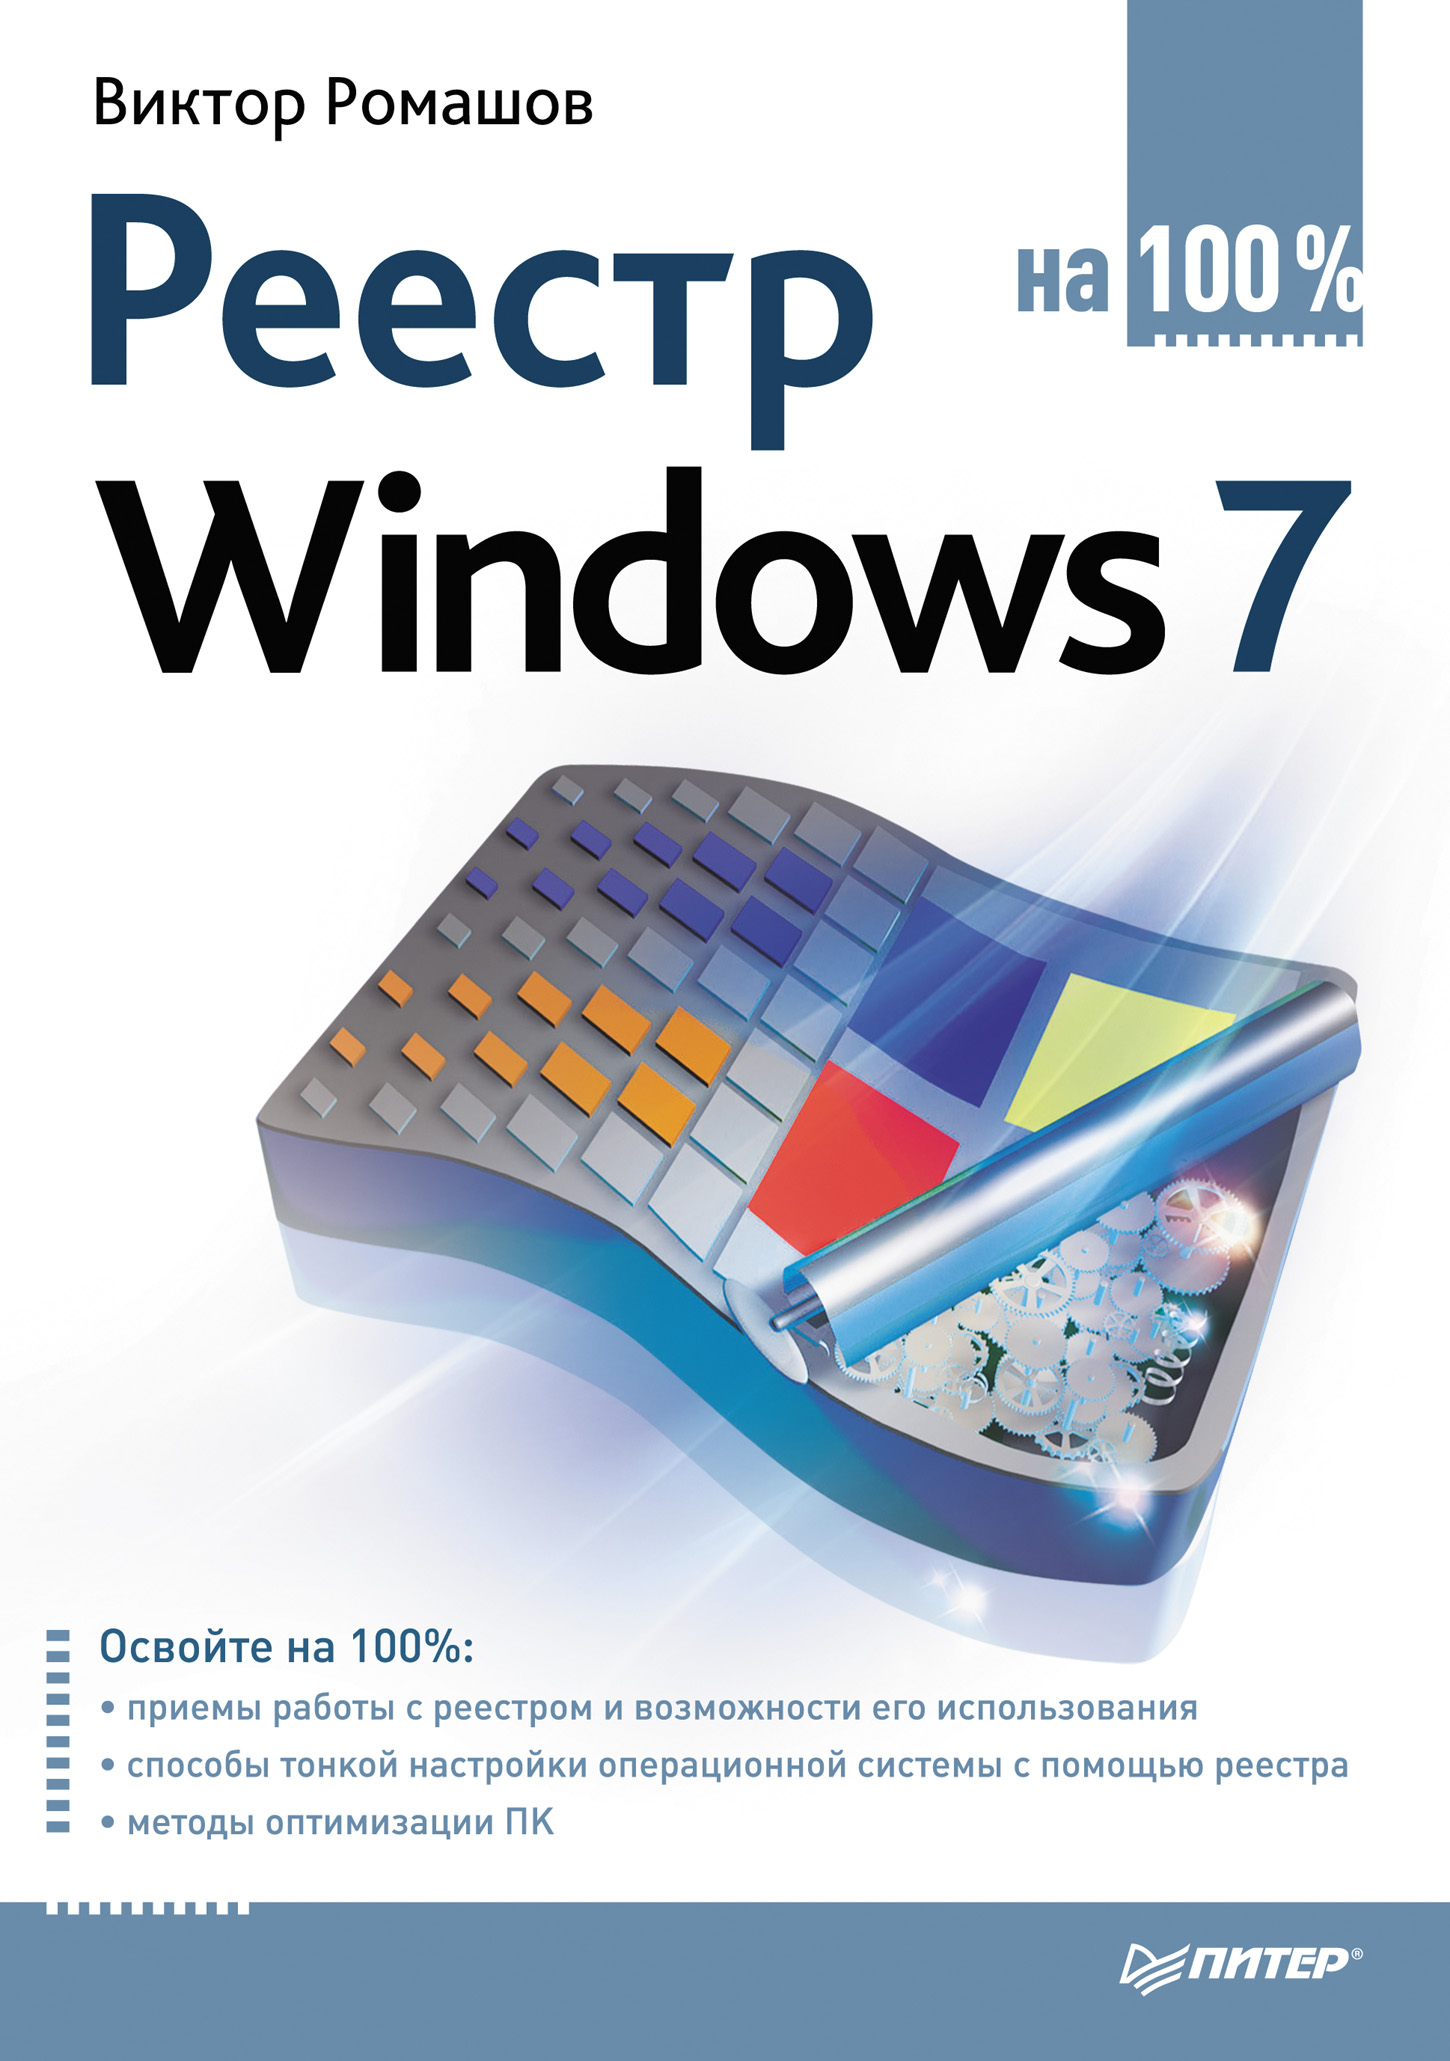 Книга  Реестр Windows 7 на 100% созданная Виктор Ромашов может относится к жанру ОС и сети. Стоимость электронной книги Реестр Windows 7 на 100% с идентификатором 586335 составляет 69.00 руб.